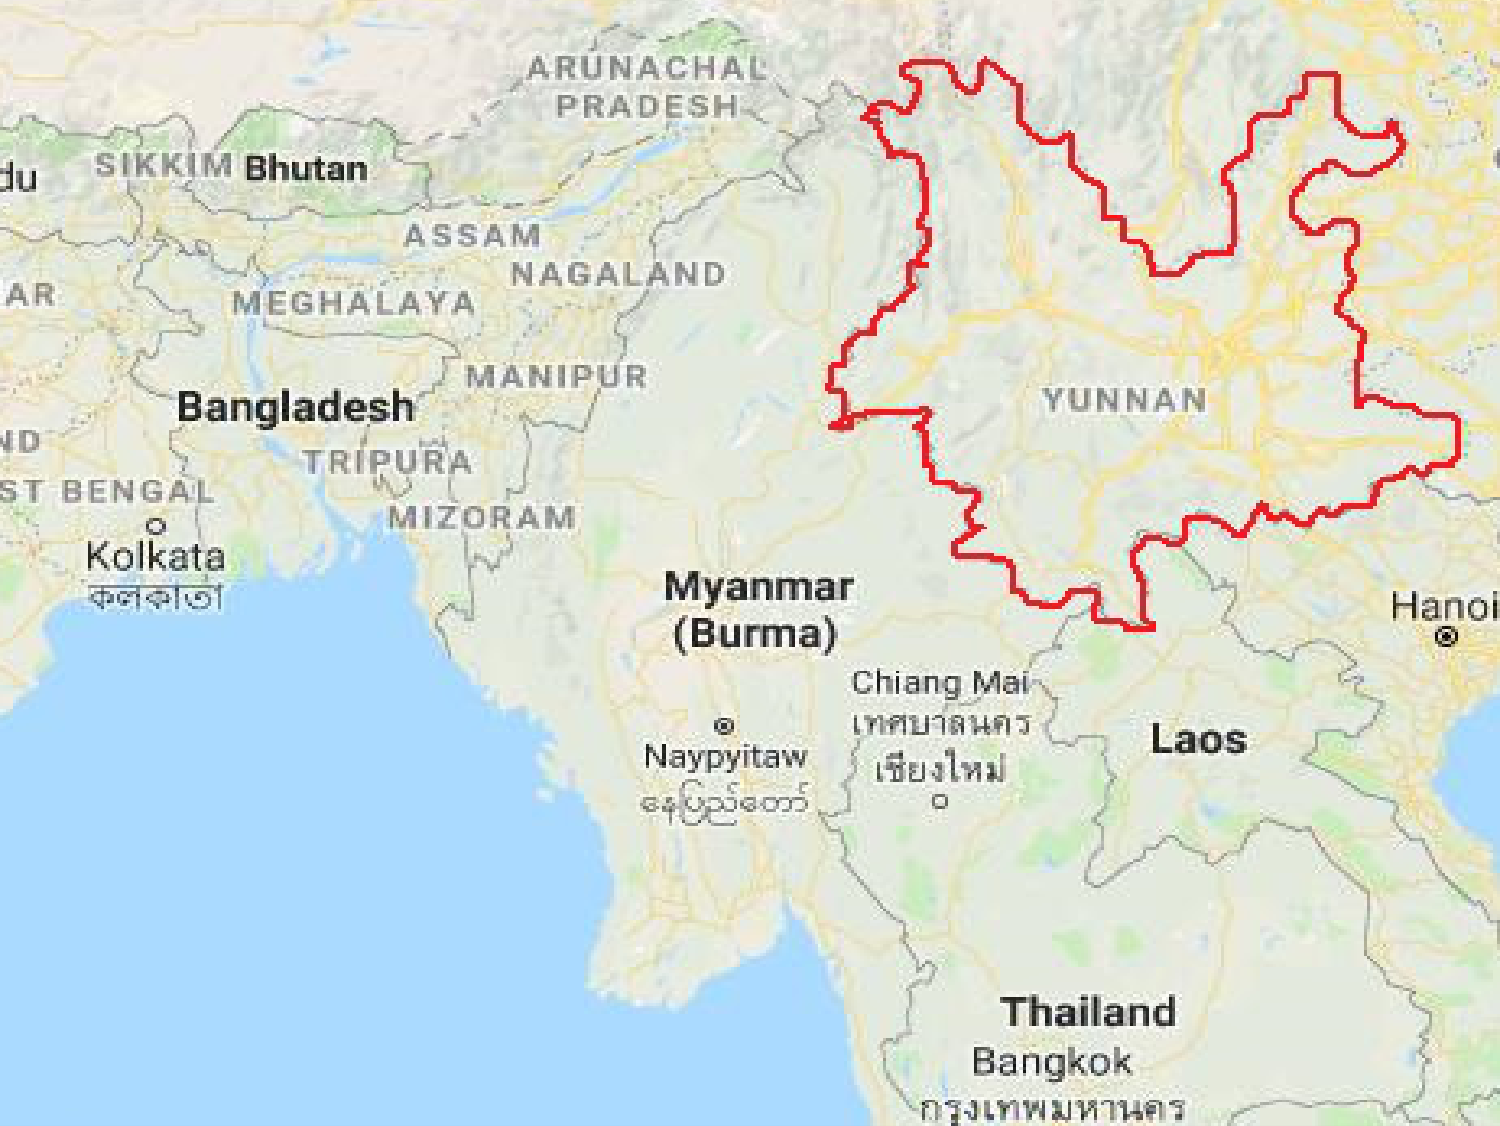 myanmar language map